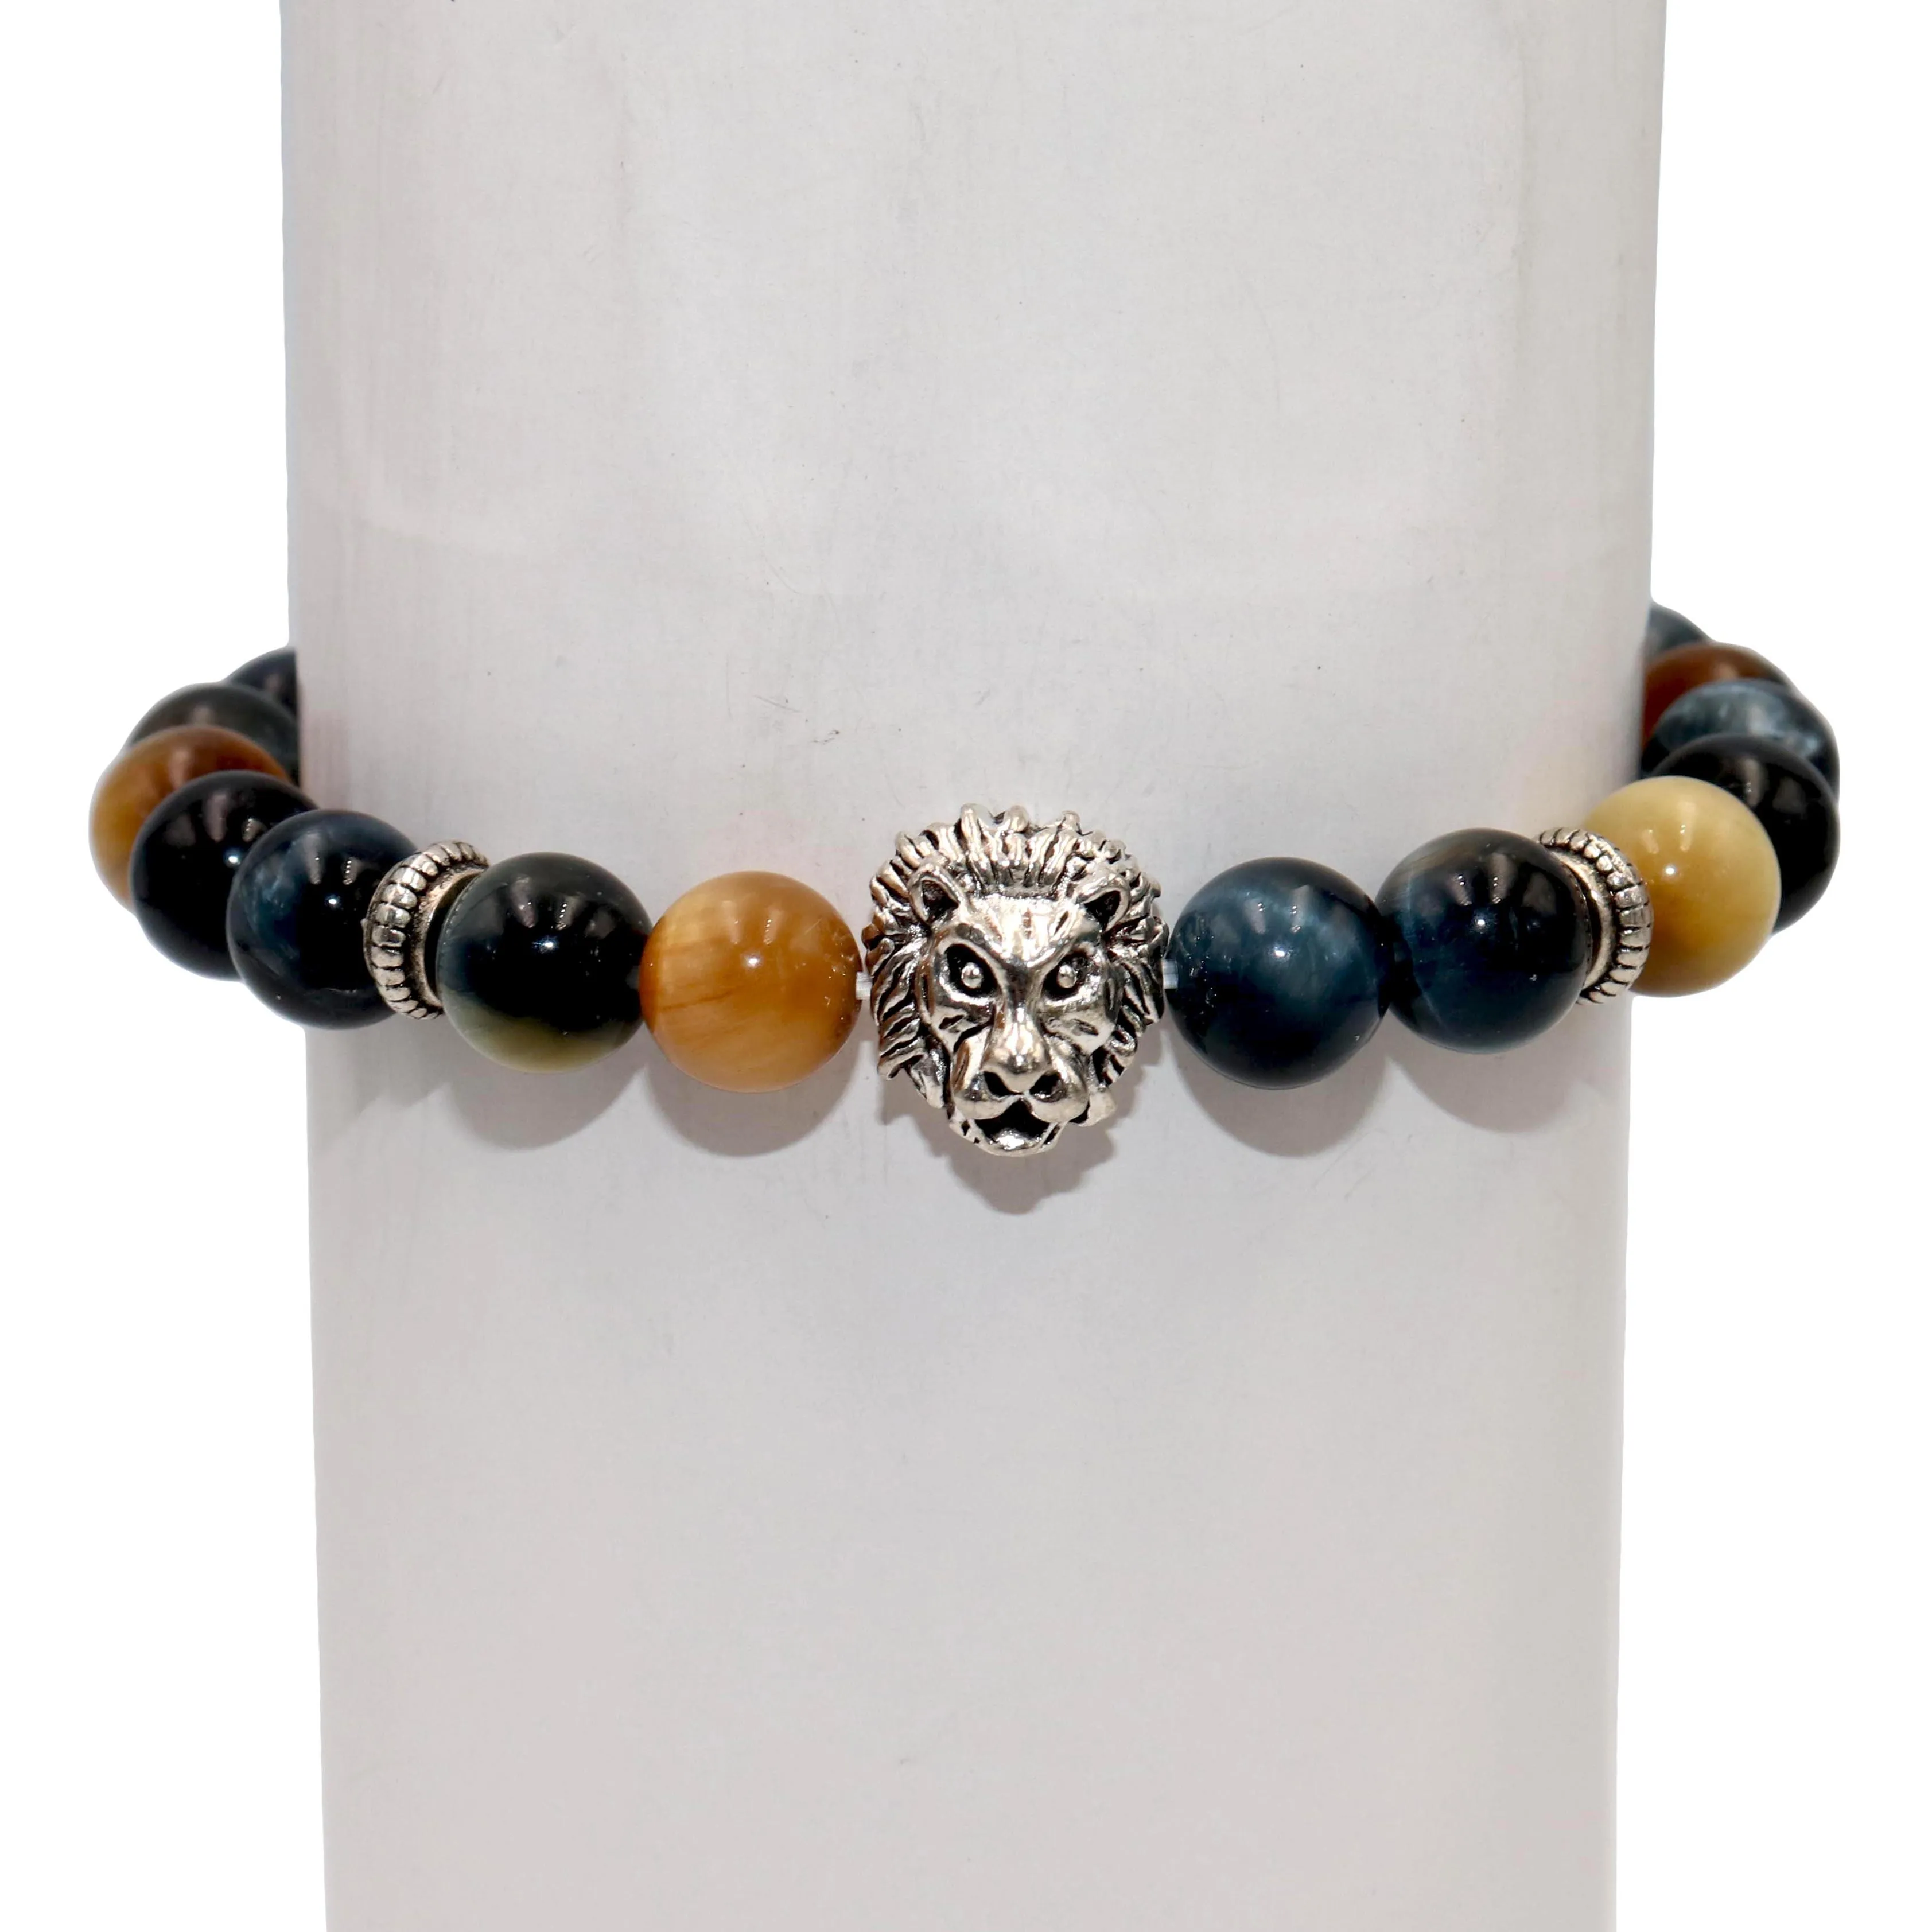 8 мм модный серебряный шарм-браслет со львом для мужчин и женщин лазурит аметисты тигровый глаз натуральный камень жемчуг Йога браслет ювелирные изделия